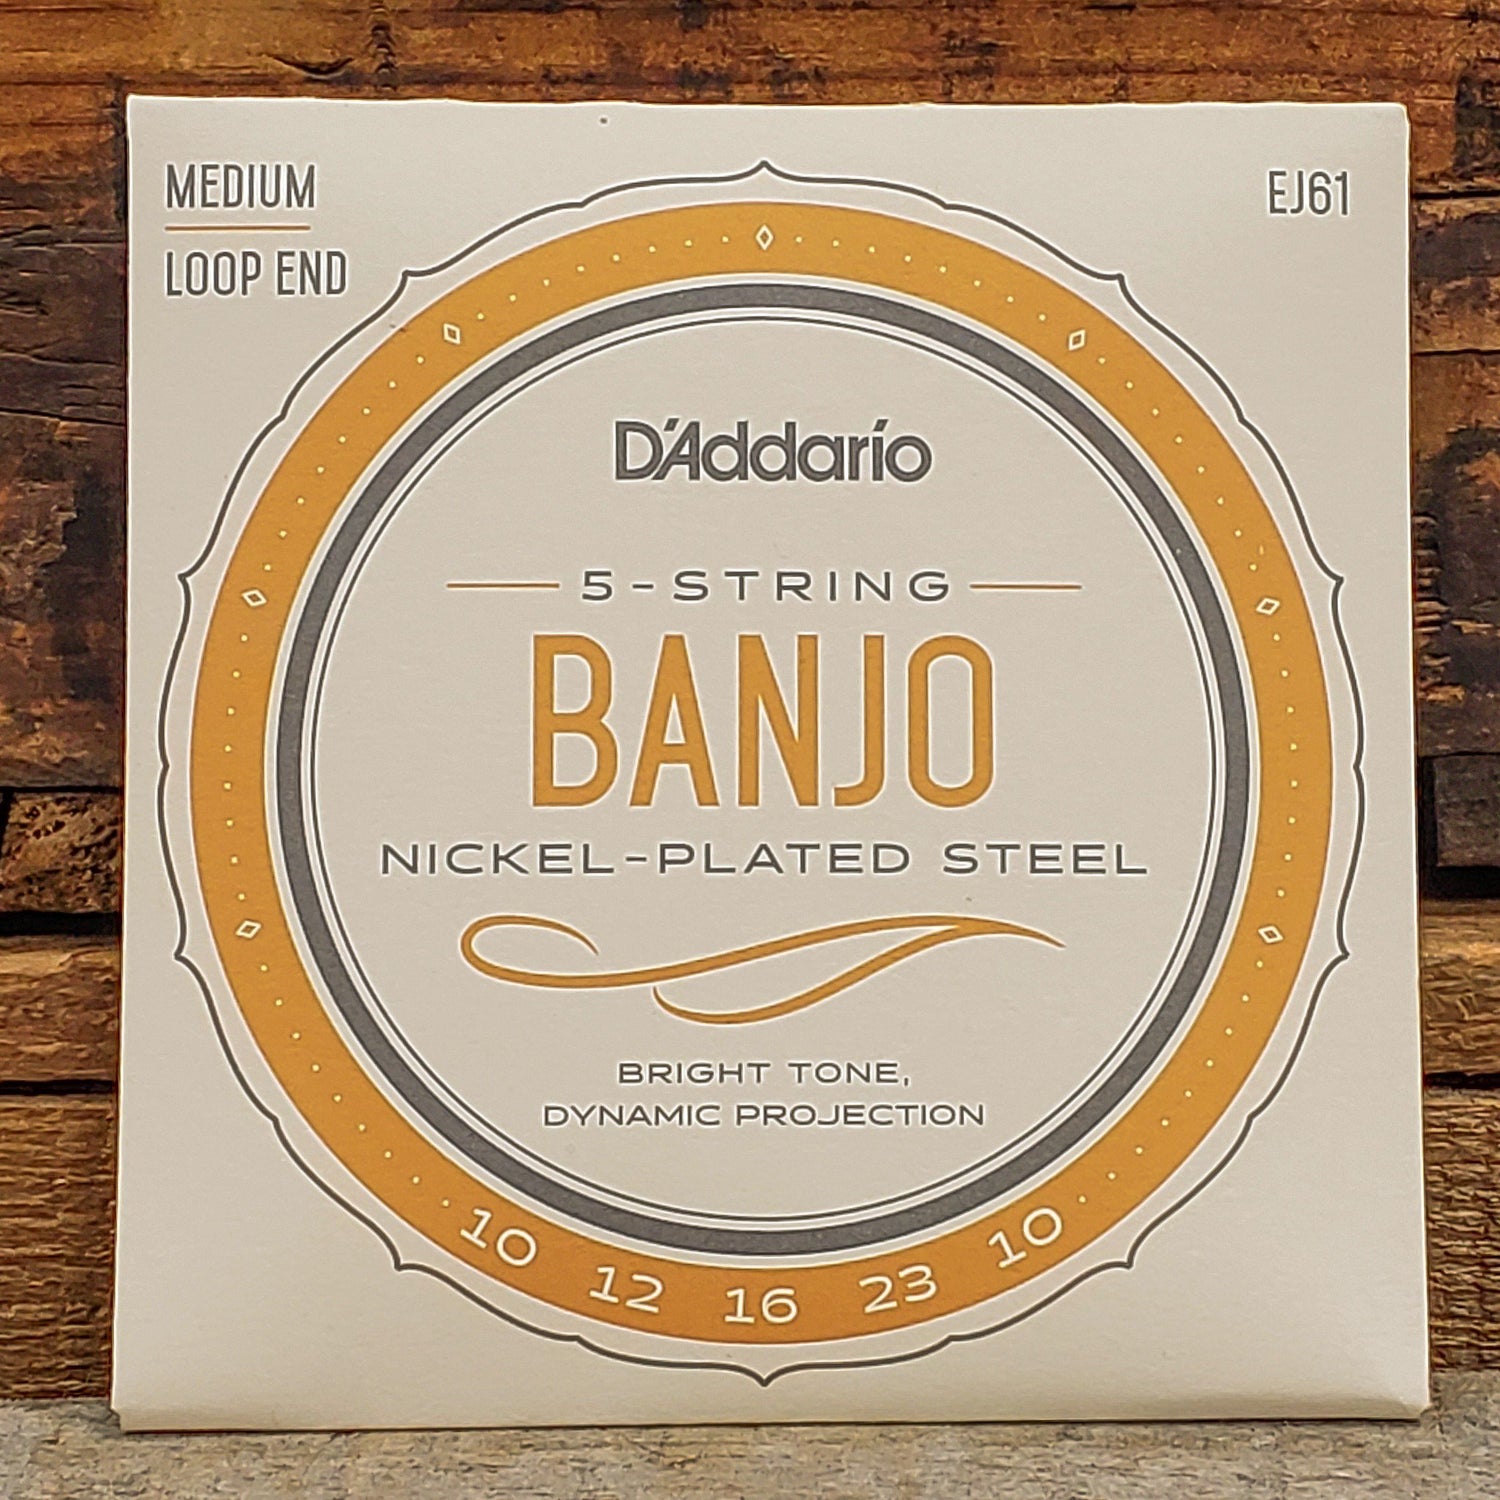 Banjo Strings